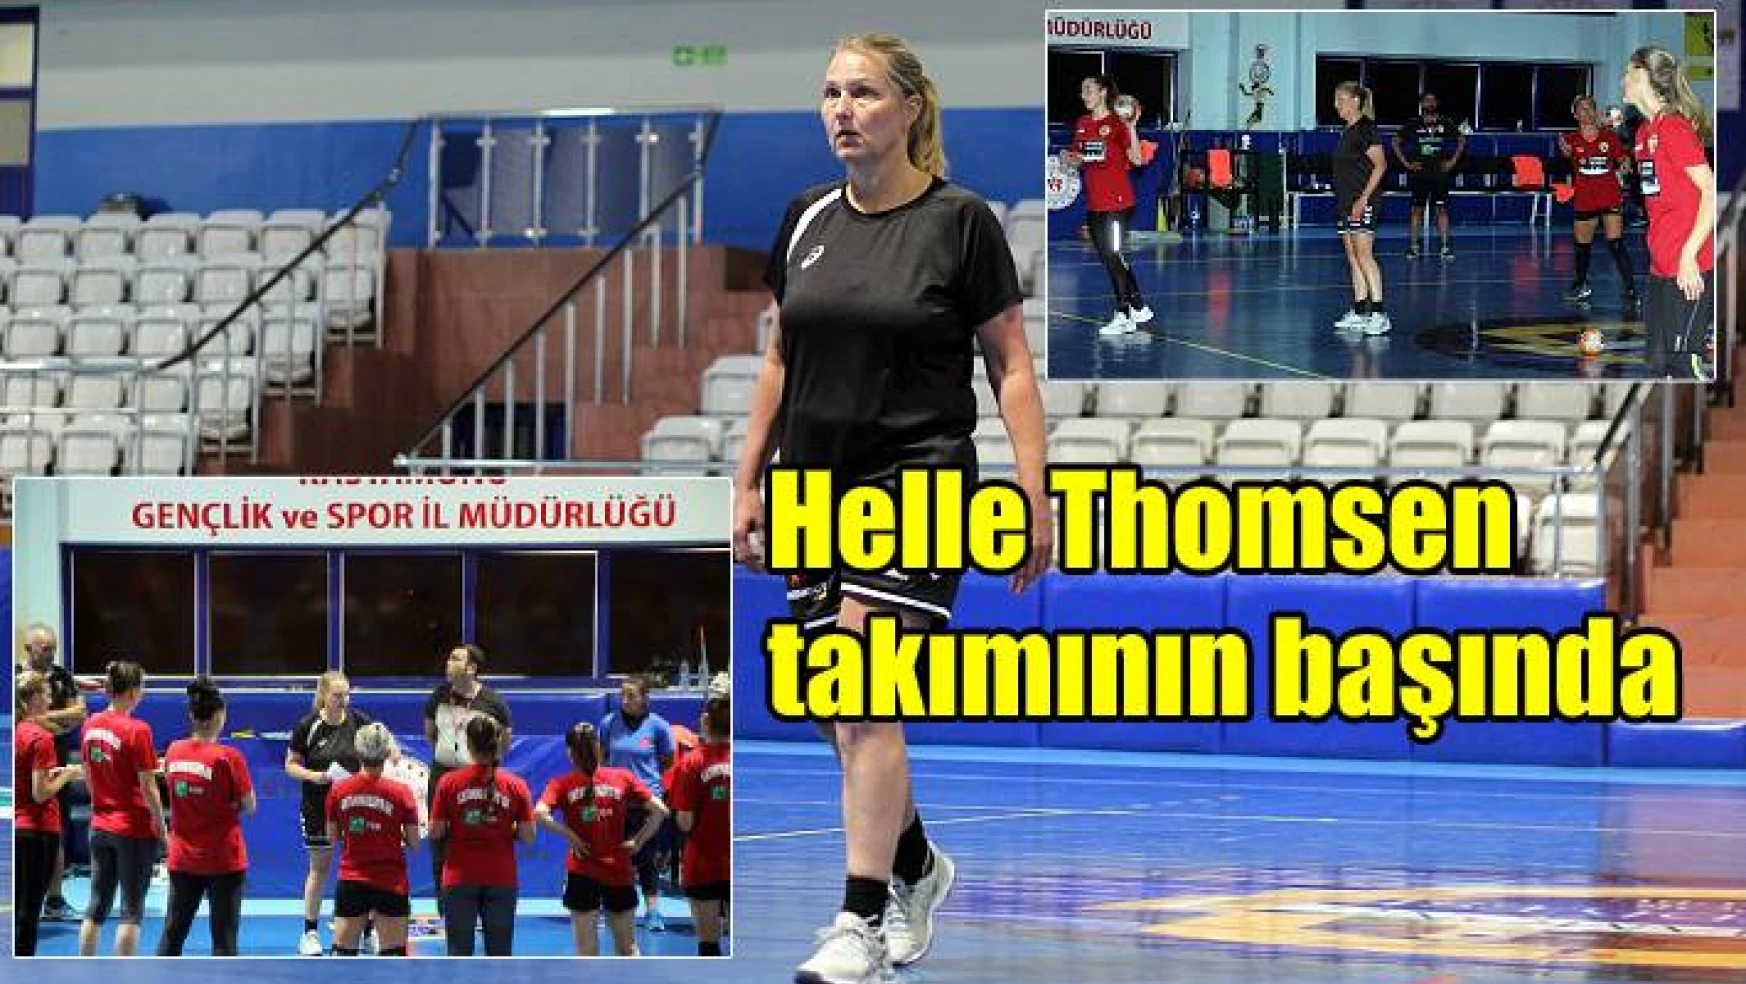 Helle Thomsen ilk idmanına çıktı